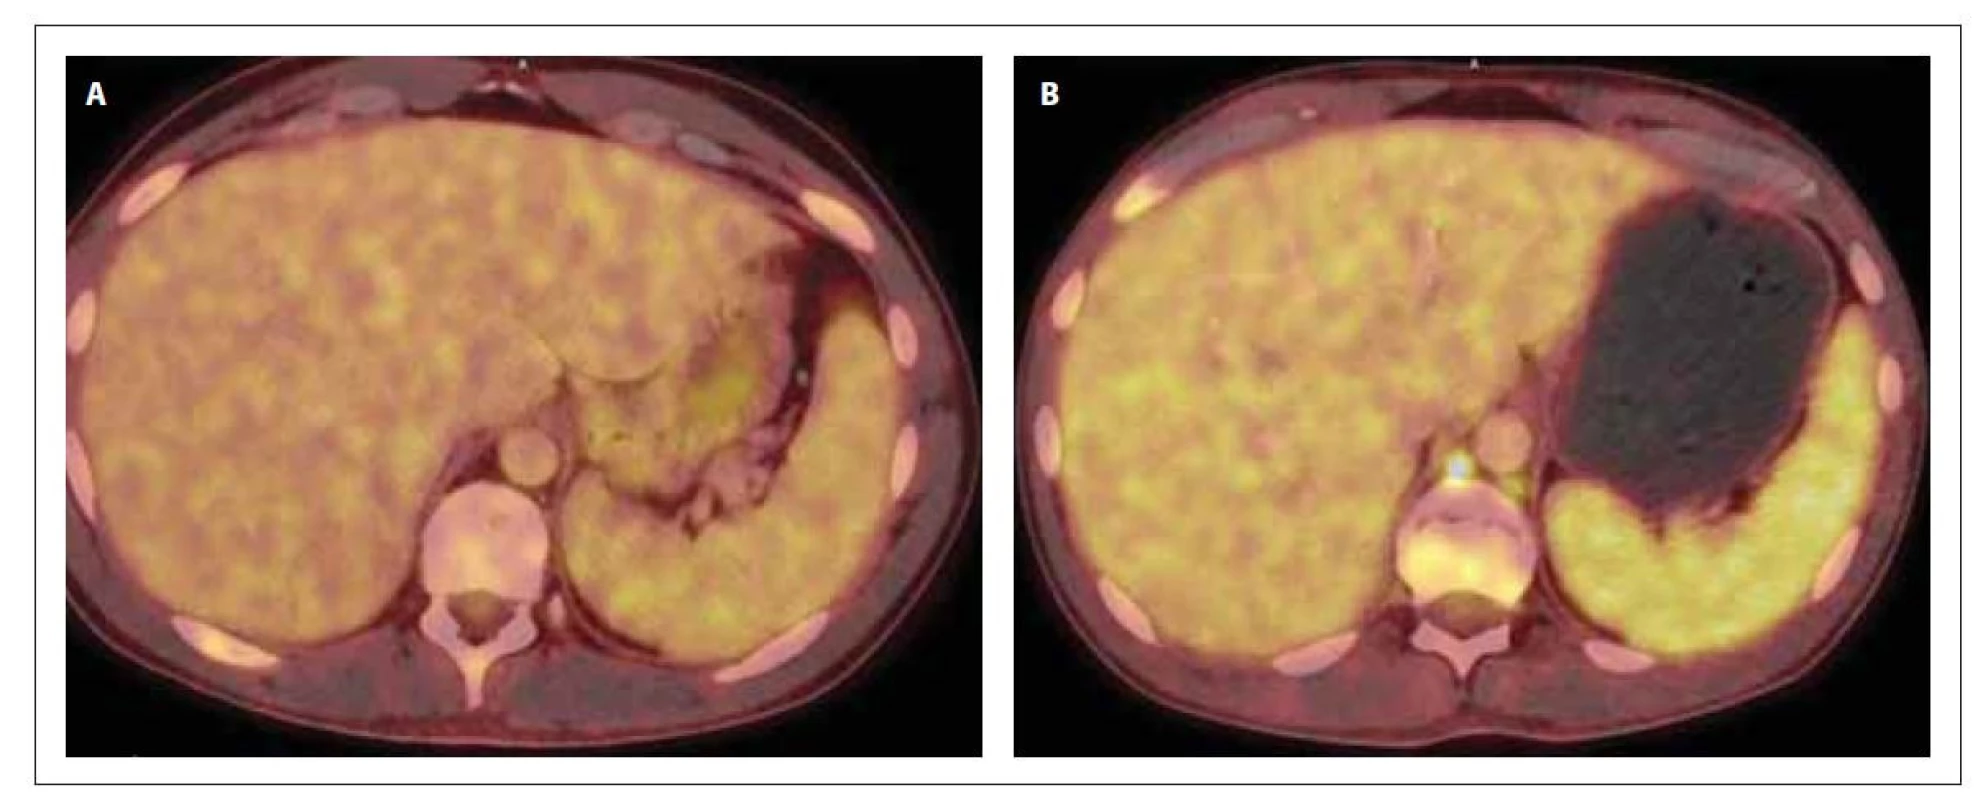 PET/CT sleziny v době diagnózy (A) a po 1. konsolidaci (B). Slezina bez patologického nálezu (A) a s prokázaným
hypermetabolizmem 18F-FDG (B) difuzně ve slezině vel. 134 x 39 x 128 mm (SUVmax 4,6), bez ložiskových změn
a ve 2 lymfatických uzlinách retroperitonea.